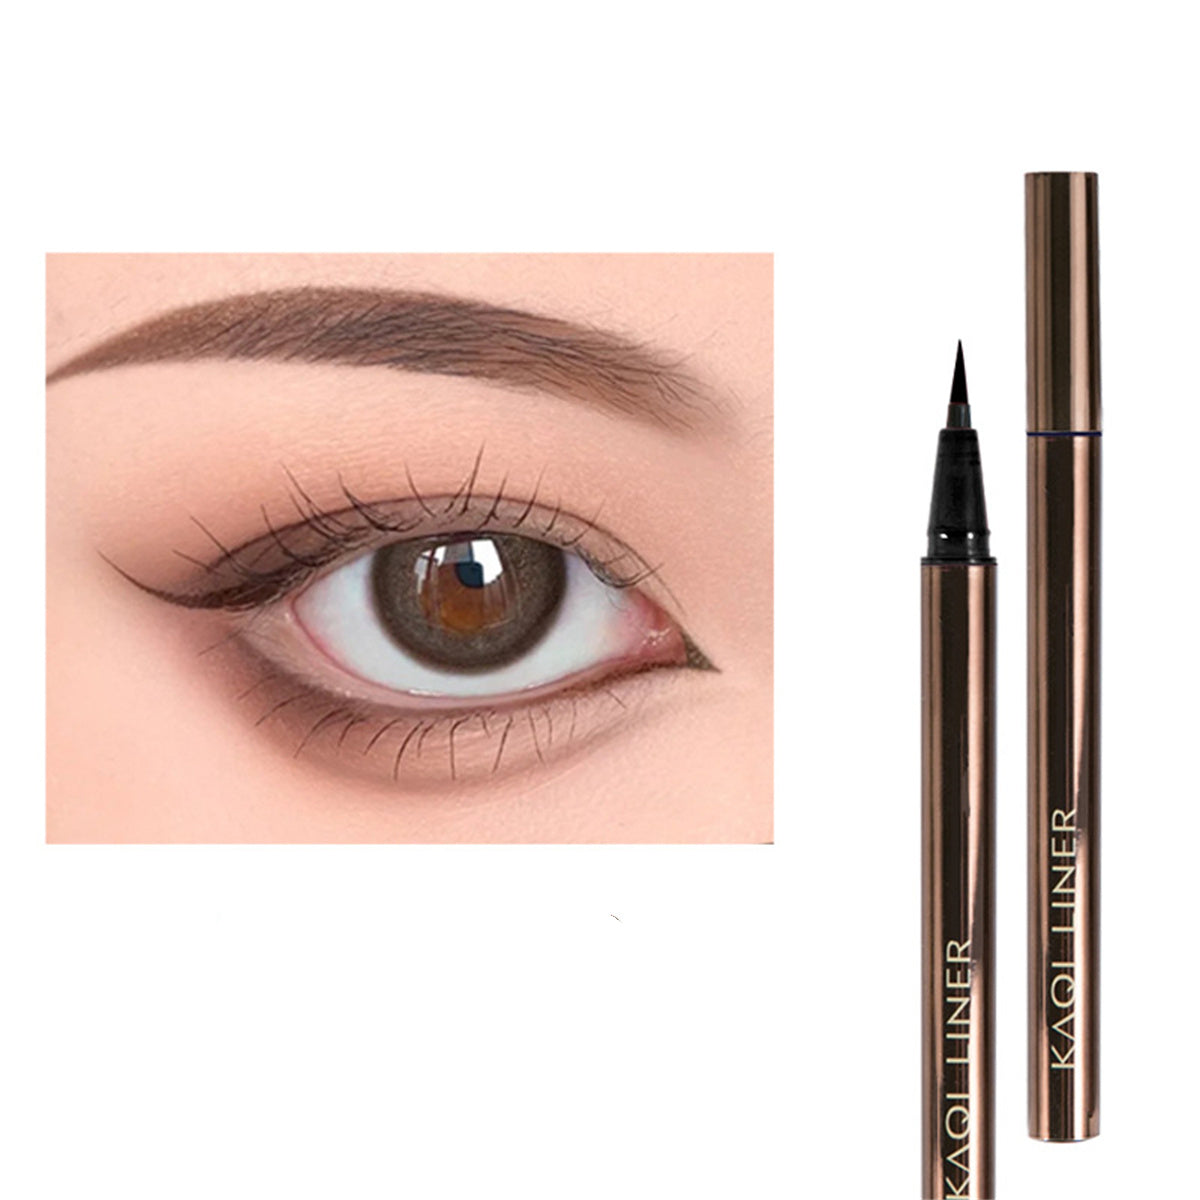 Matte Liquid Eyeliner Pencil Waterproof High Pigmented Long Lasting Eyeliner Eye Makeup